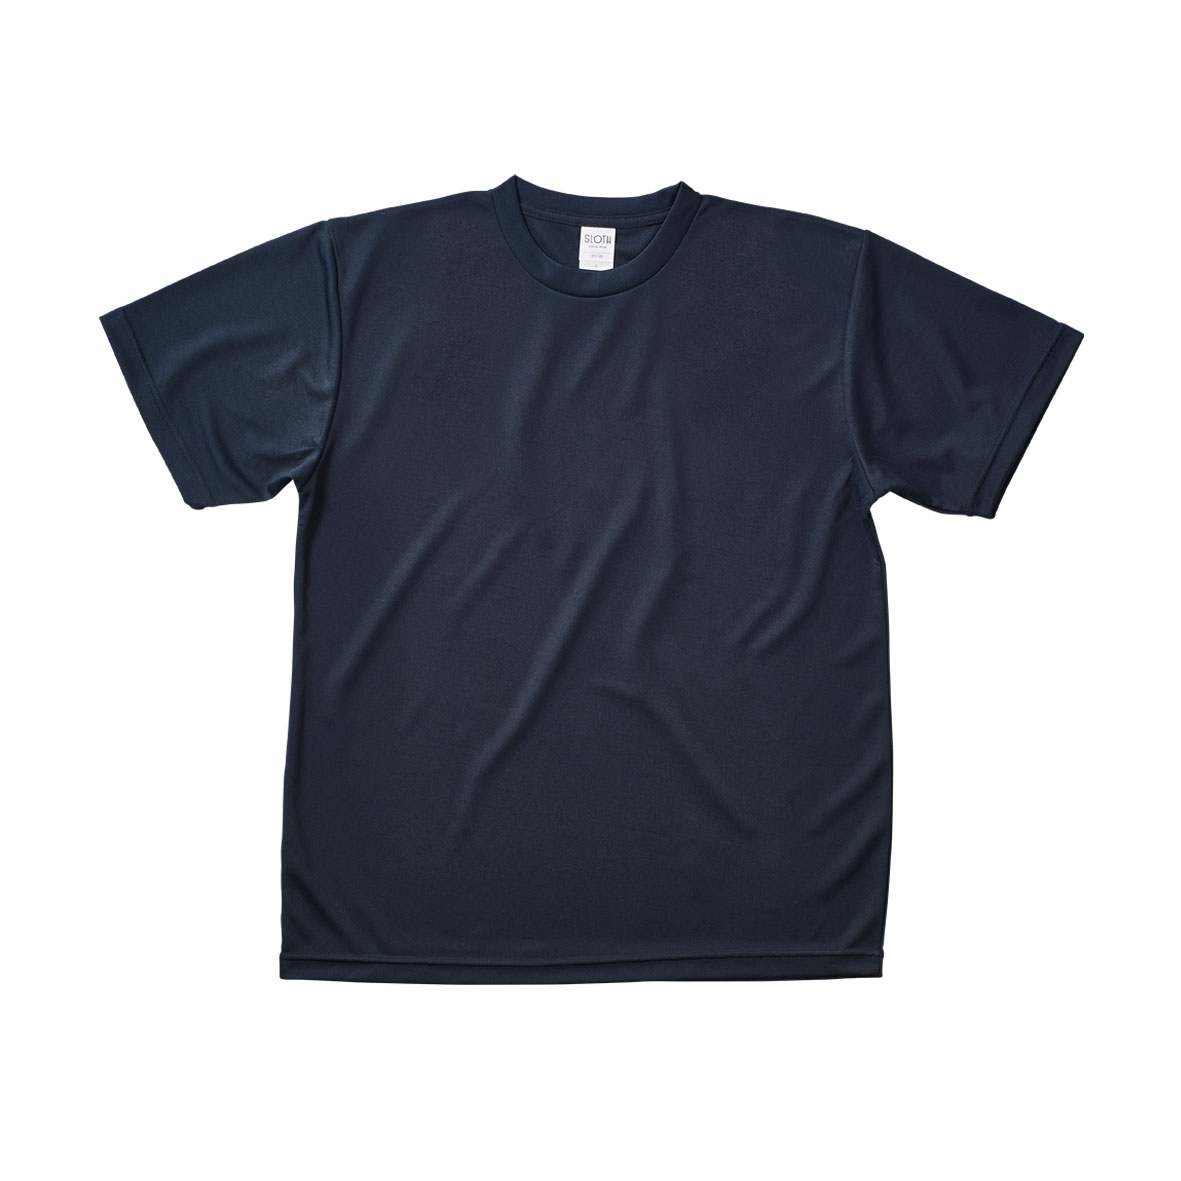 SLOTH スロス リサイクルポリエステル Tシャツ <ケミカルリサイクル> (品番ST1102)